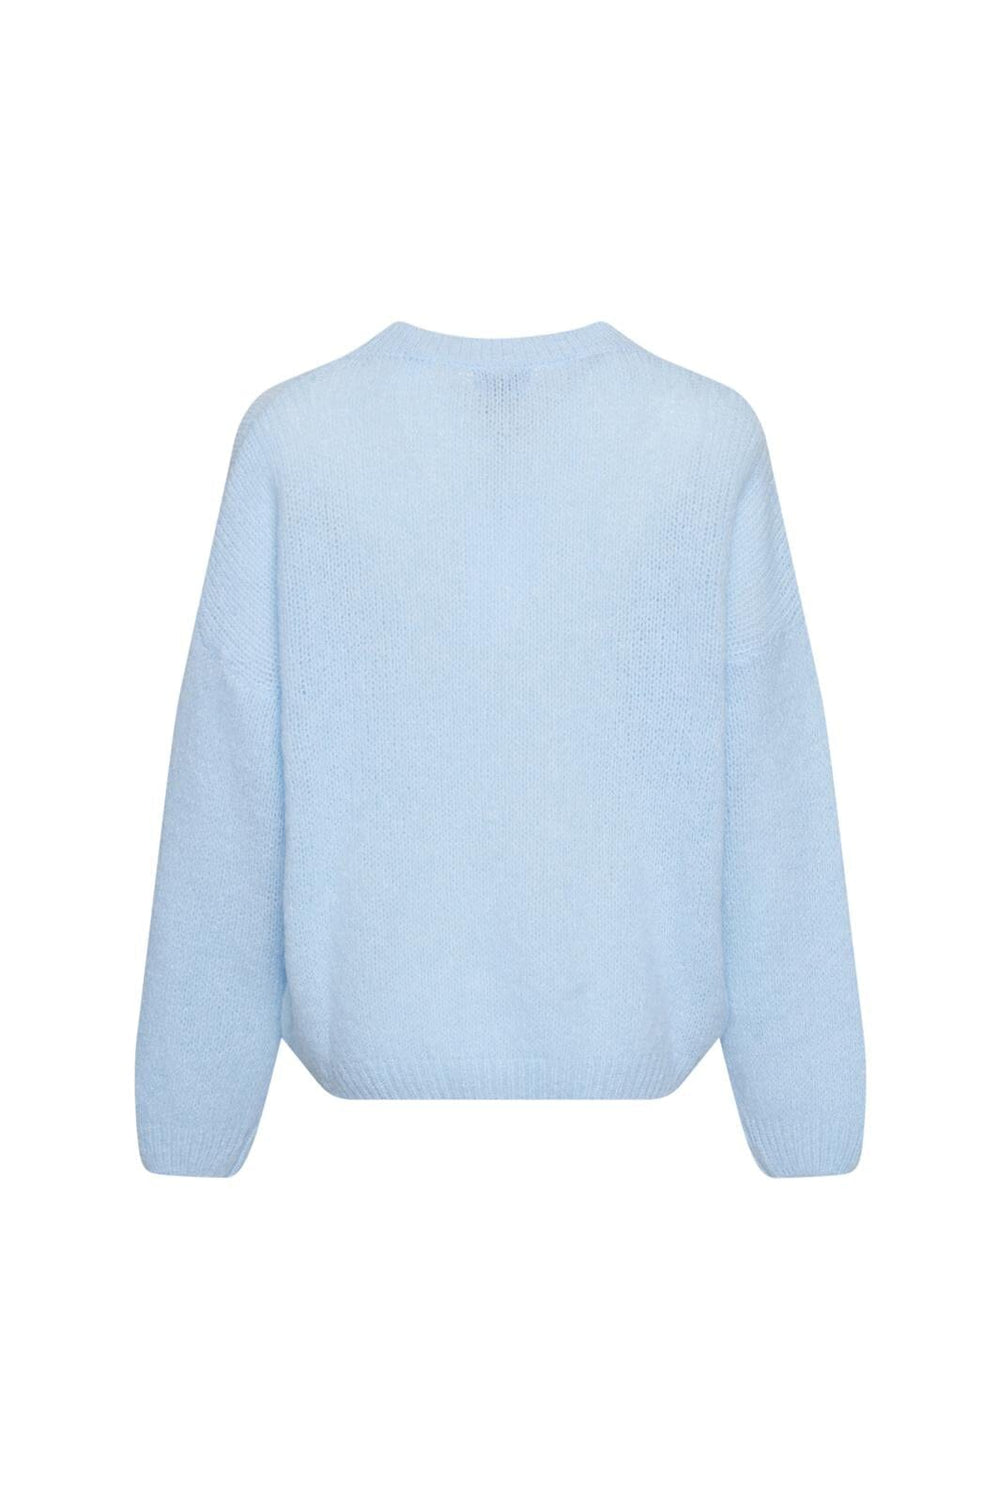 Noella - Renn Knit Sweater - 016 Light Blue